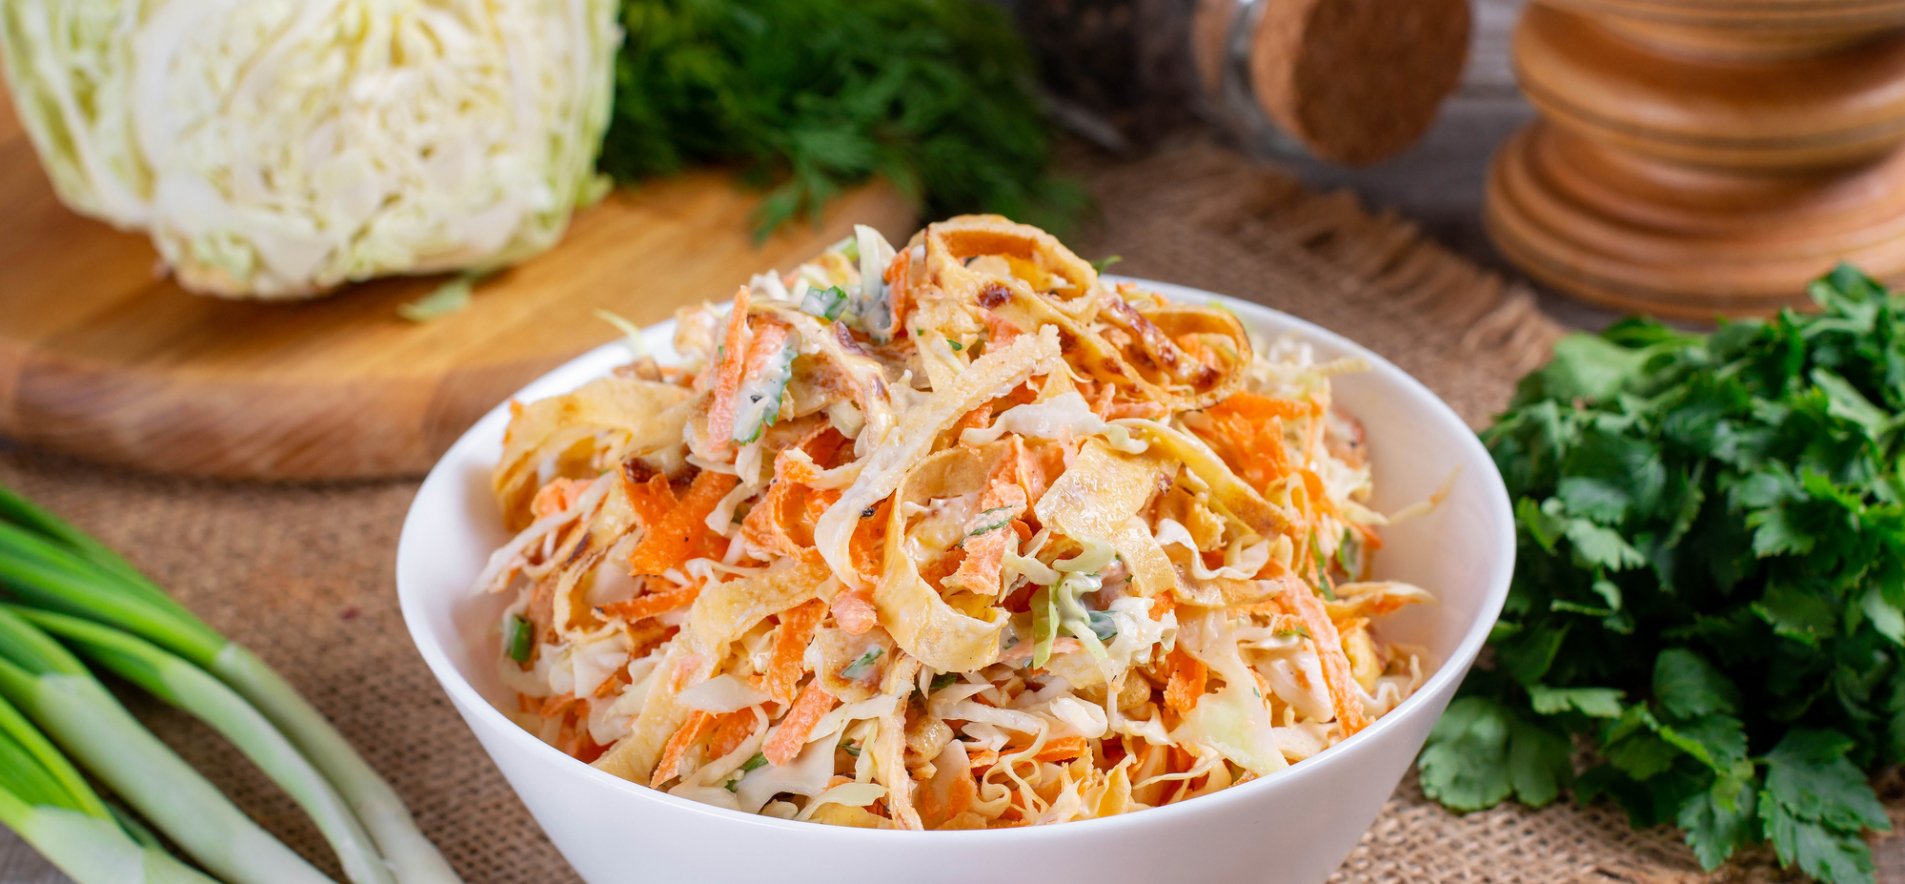 Салат весенний с капустой и морковью - пошаговый рецепт с фото на natali-fashion.ru